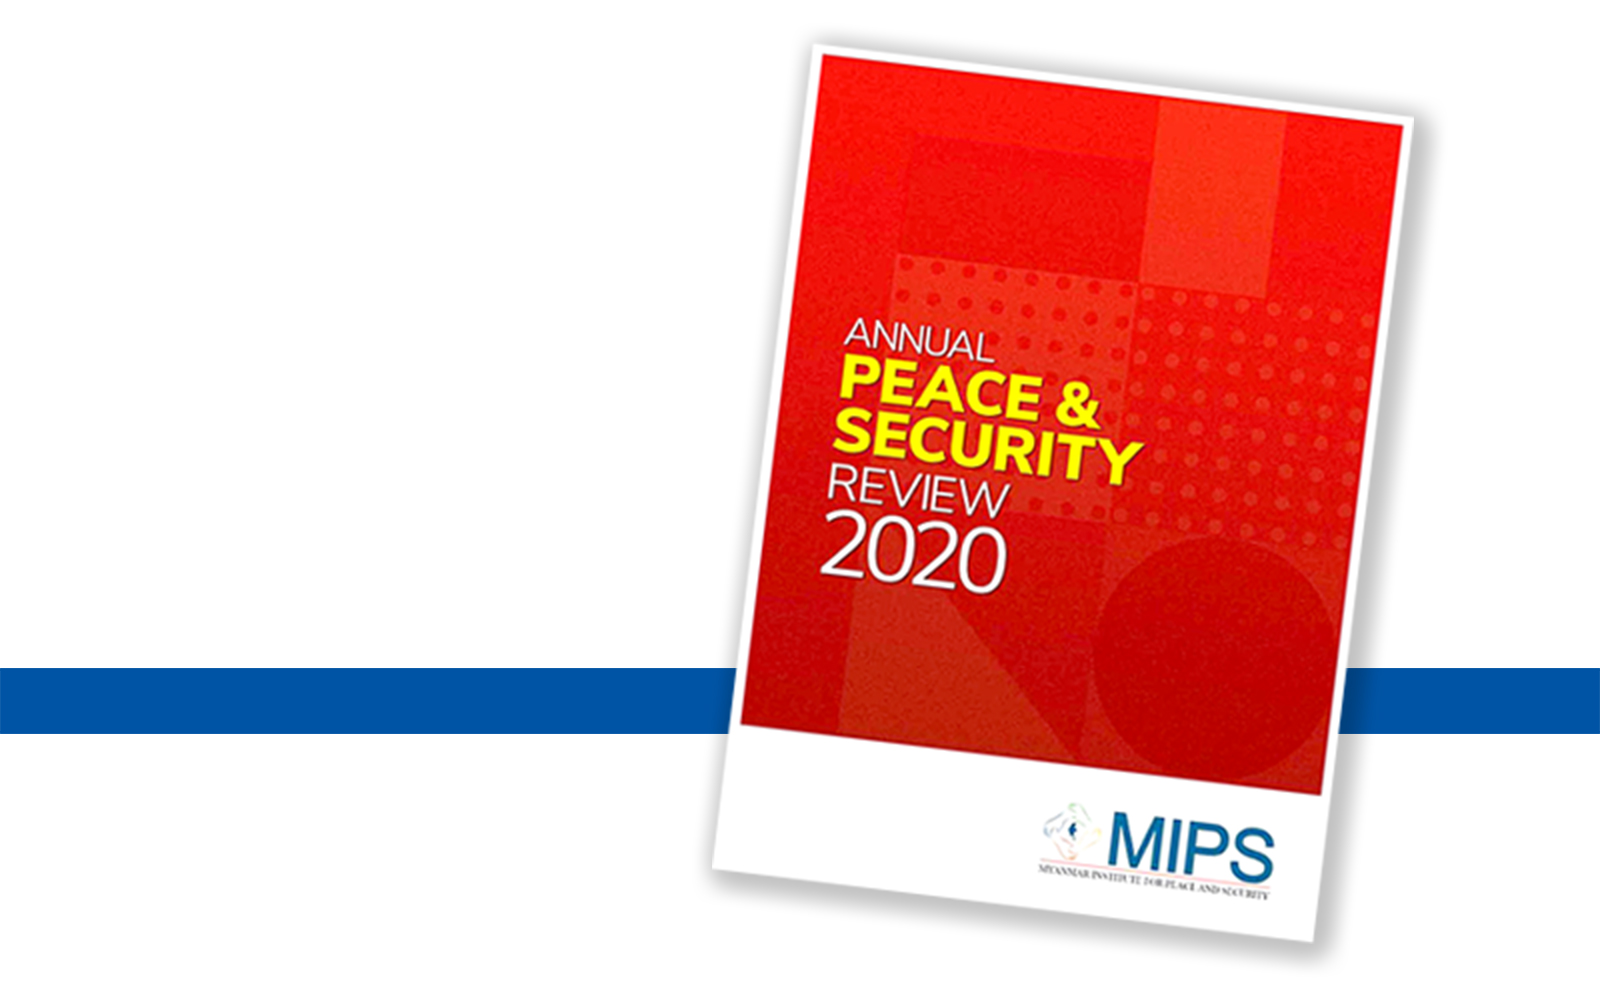 Annual Peace & Security Review 2020 နှစ်စဉ် ငြိမ်းချမ်းရေးနှင့် လုံခြုံရေး သုံးသပ်ချက် - ၂၀၂၀ (အစီရင်ခံစာမိတ်ဆက်)